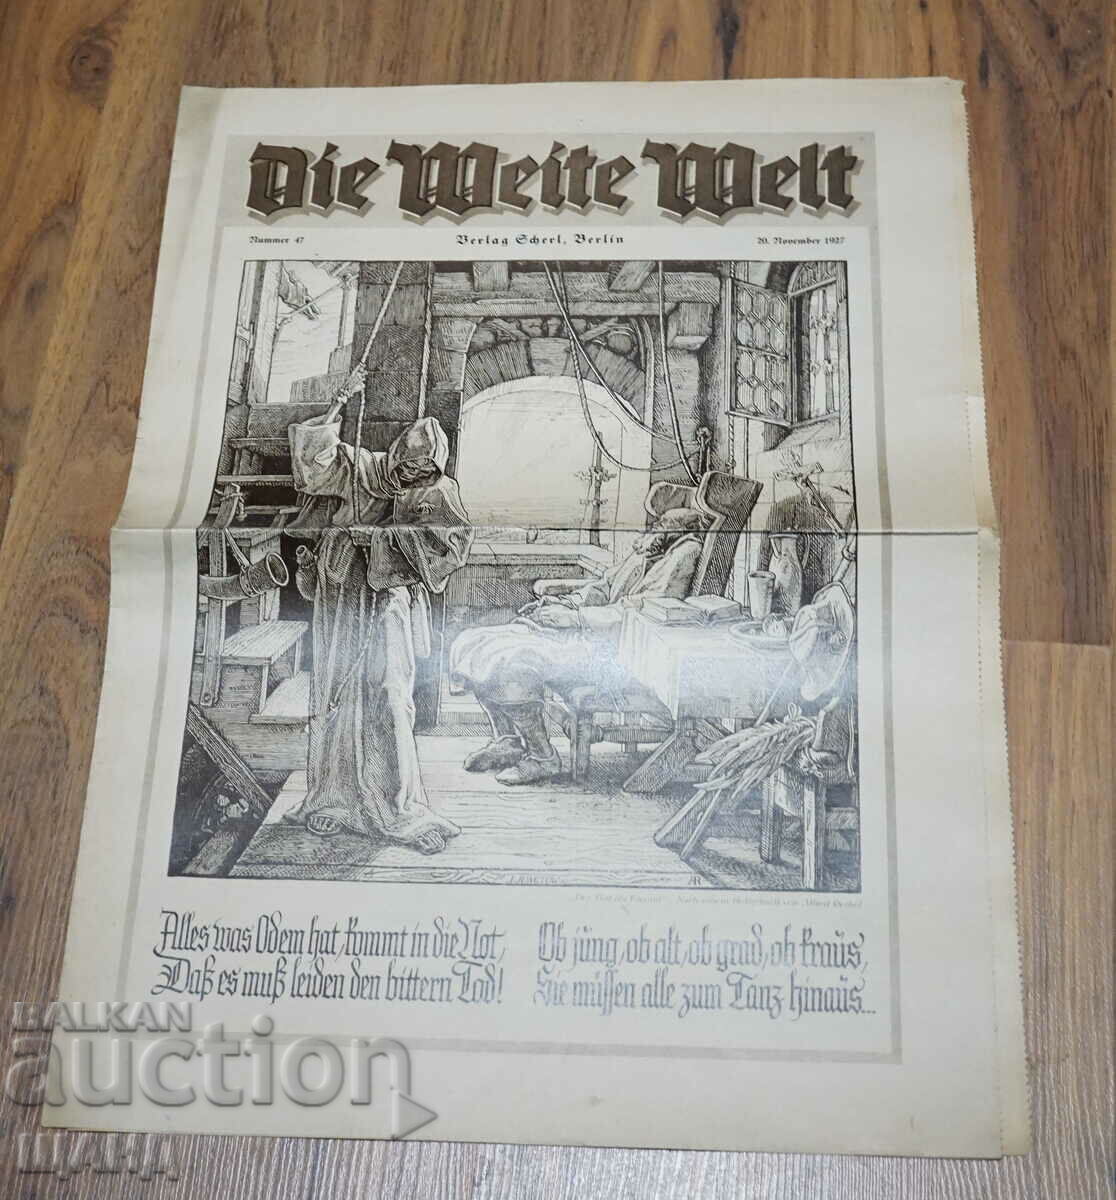 1927 Γερμανική εφημερίδα περιοδικού DIE WEITE WELT τεύχος 47